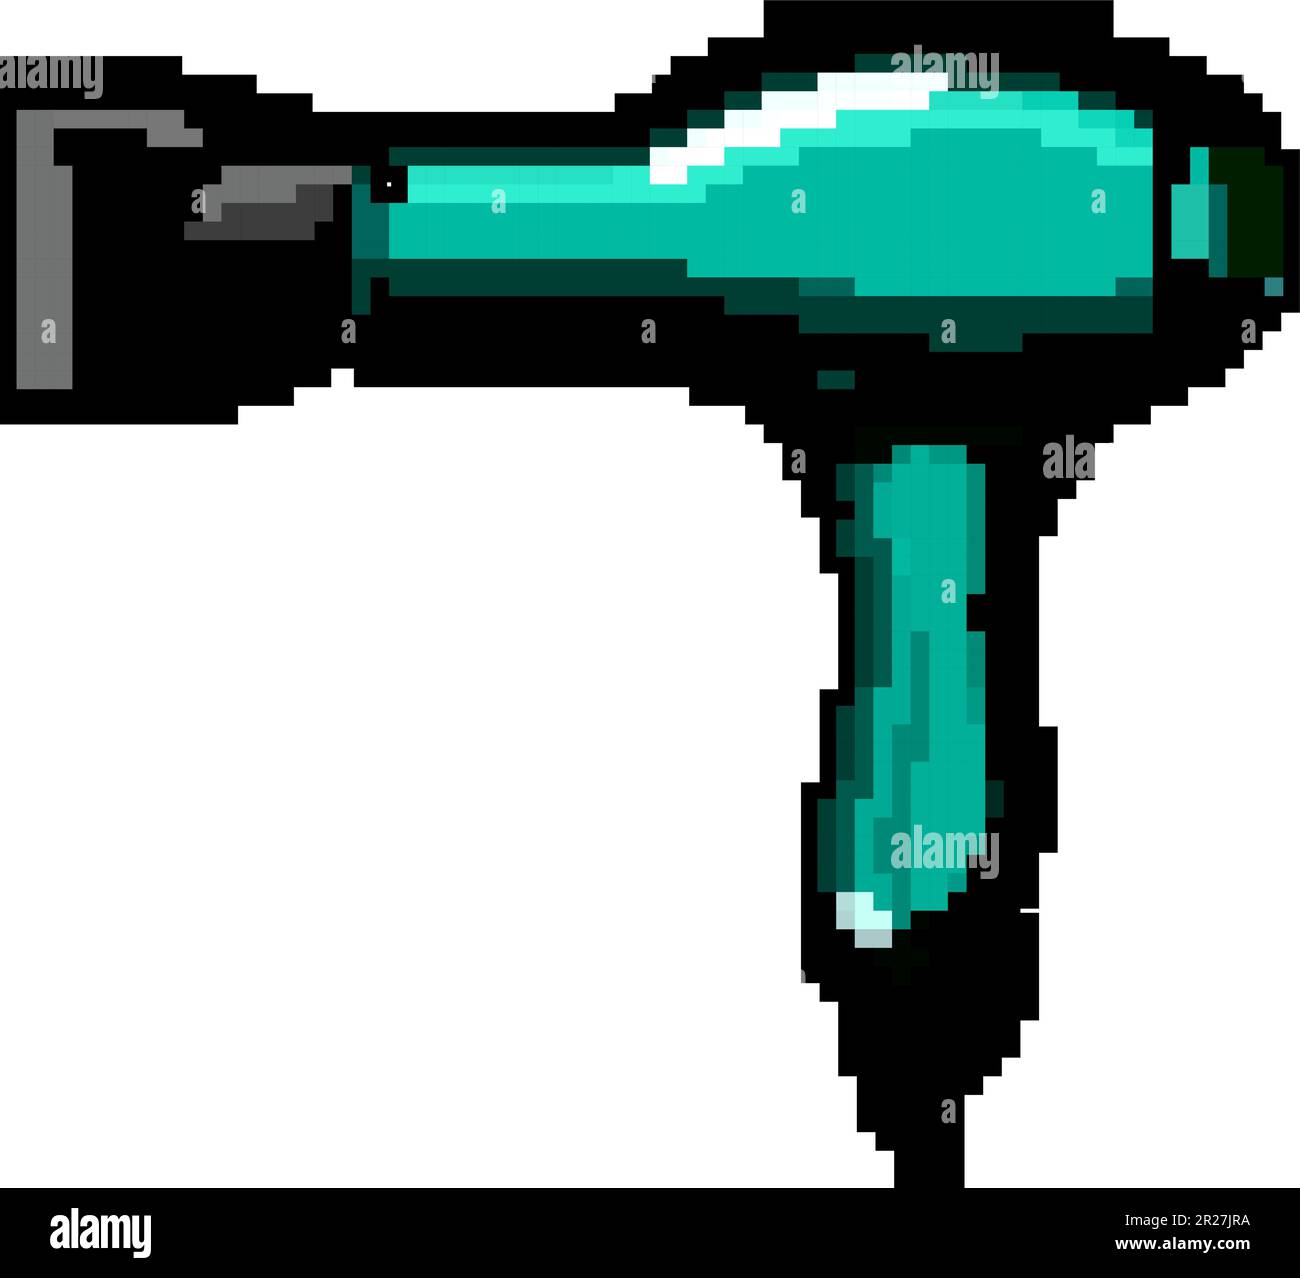 girl hair dryer game pixel art vector illustration Stock Vector Image & Art  - Alamy